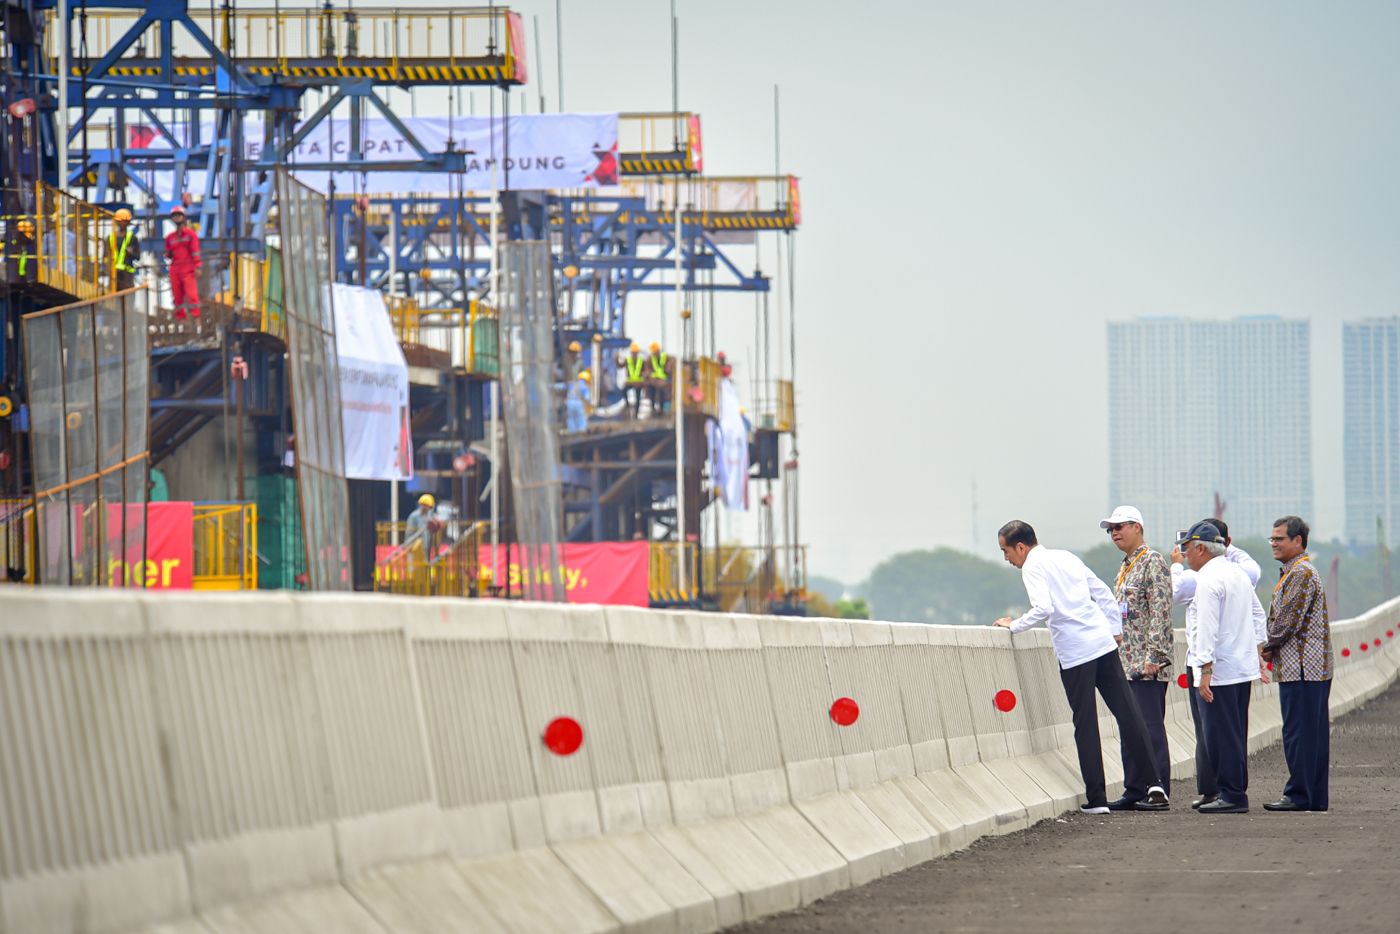 Tidak Terhambat Lahan, Presiden Jokowi Optimistis Kereta Cepat Jakarta-Bandung dan LRT Selesai Akhir 2021